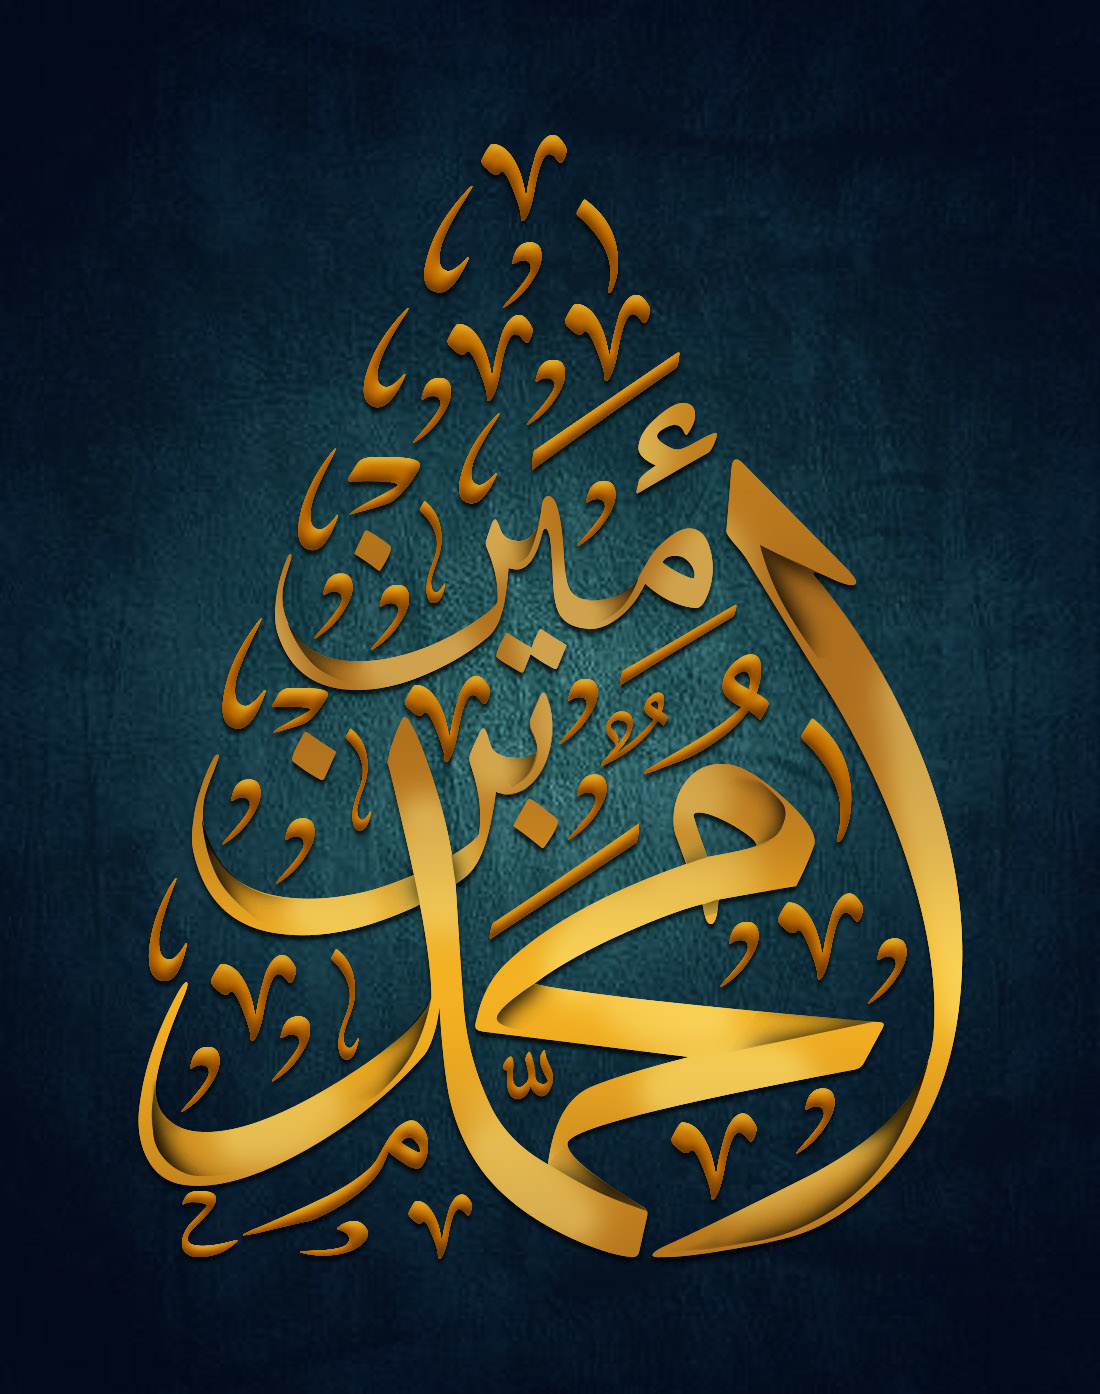 تصميم شعار لوجو مخطوطة محمد بن أمين بخلفية ملونة غامقة وتشكيل ذهبي